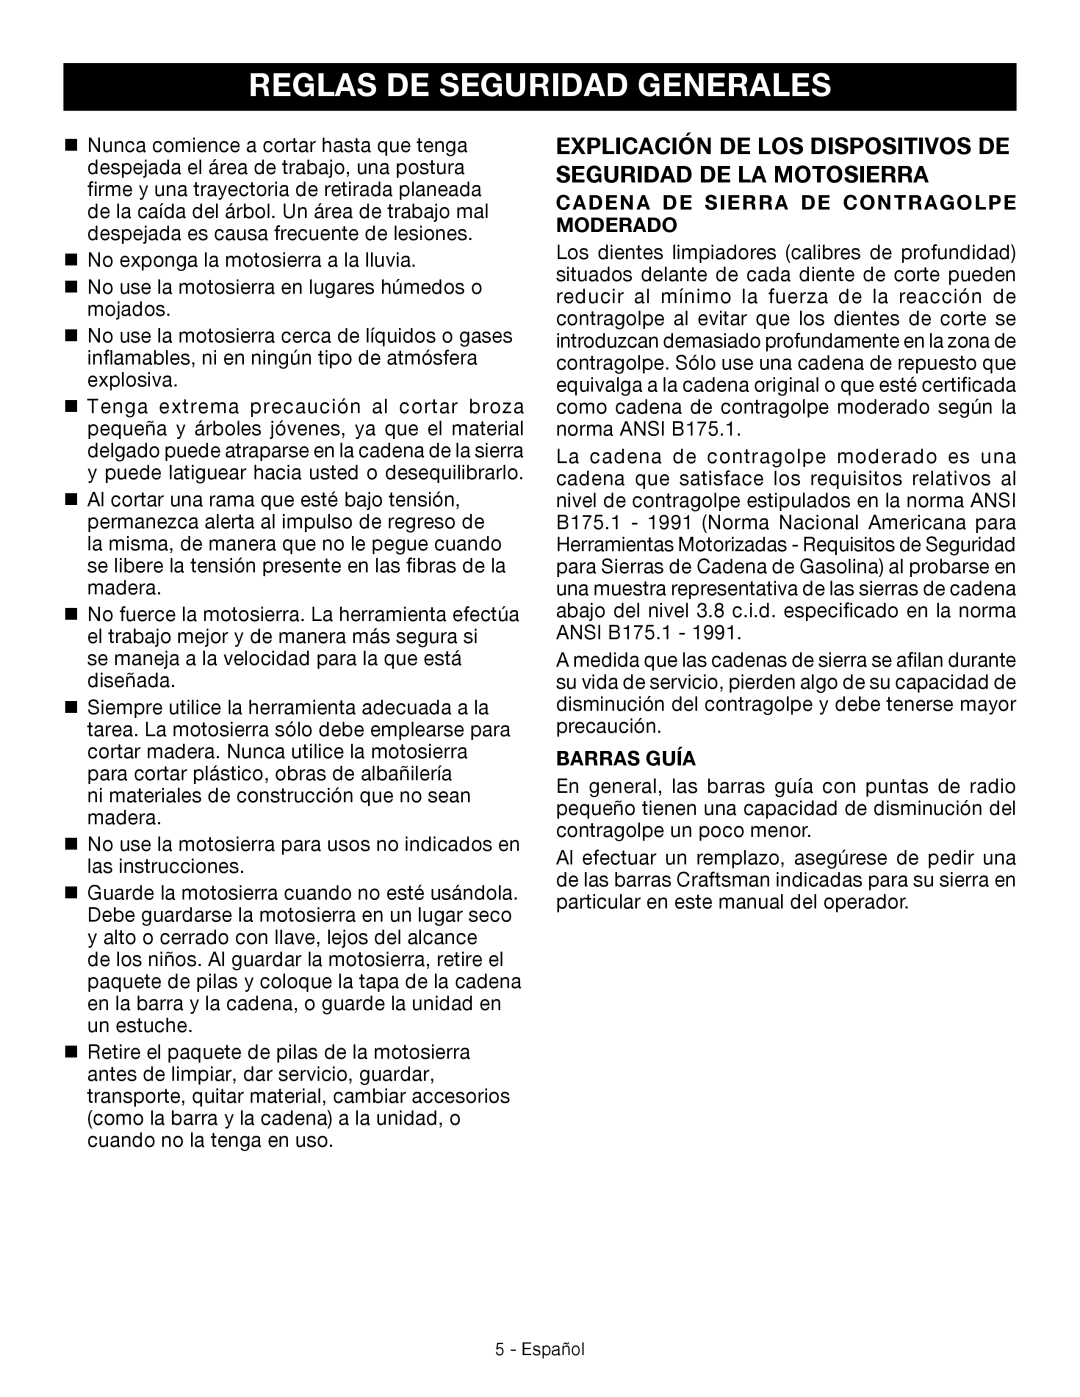 Craftsman 315.3413 manual Reglas de seguridad generales, Cadena de sierra de contragolpe moderado, Barras guía 